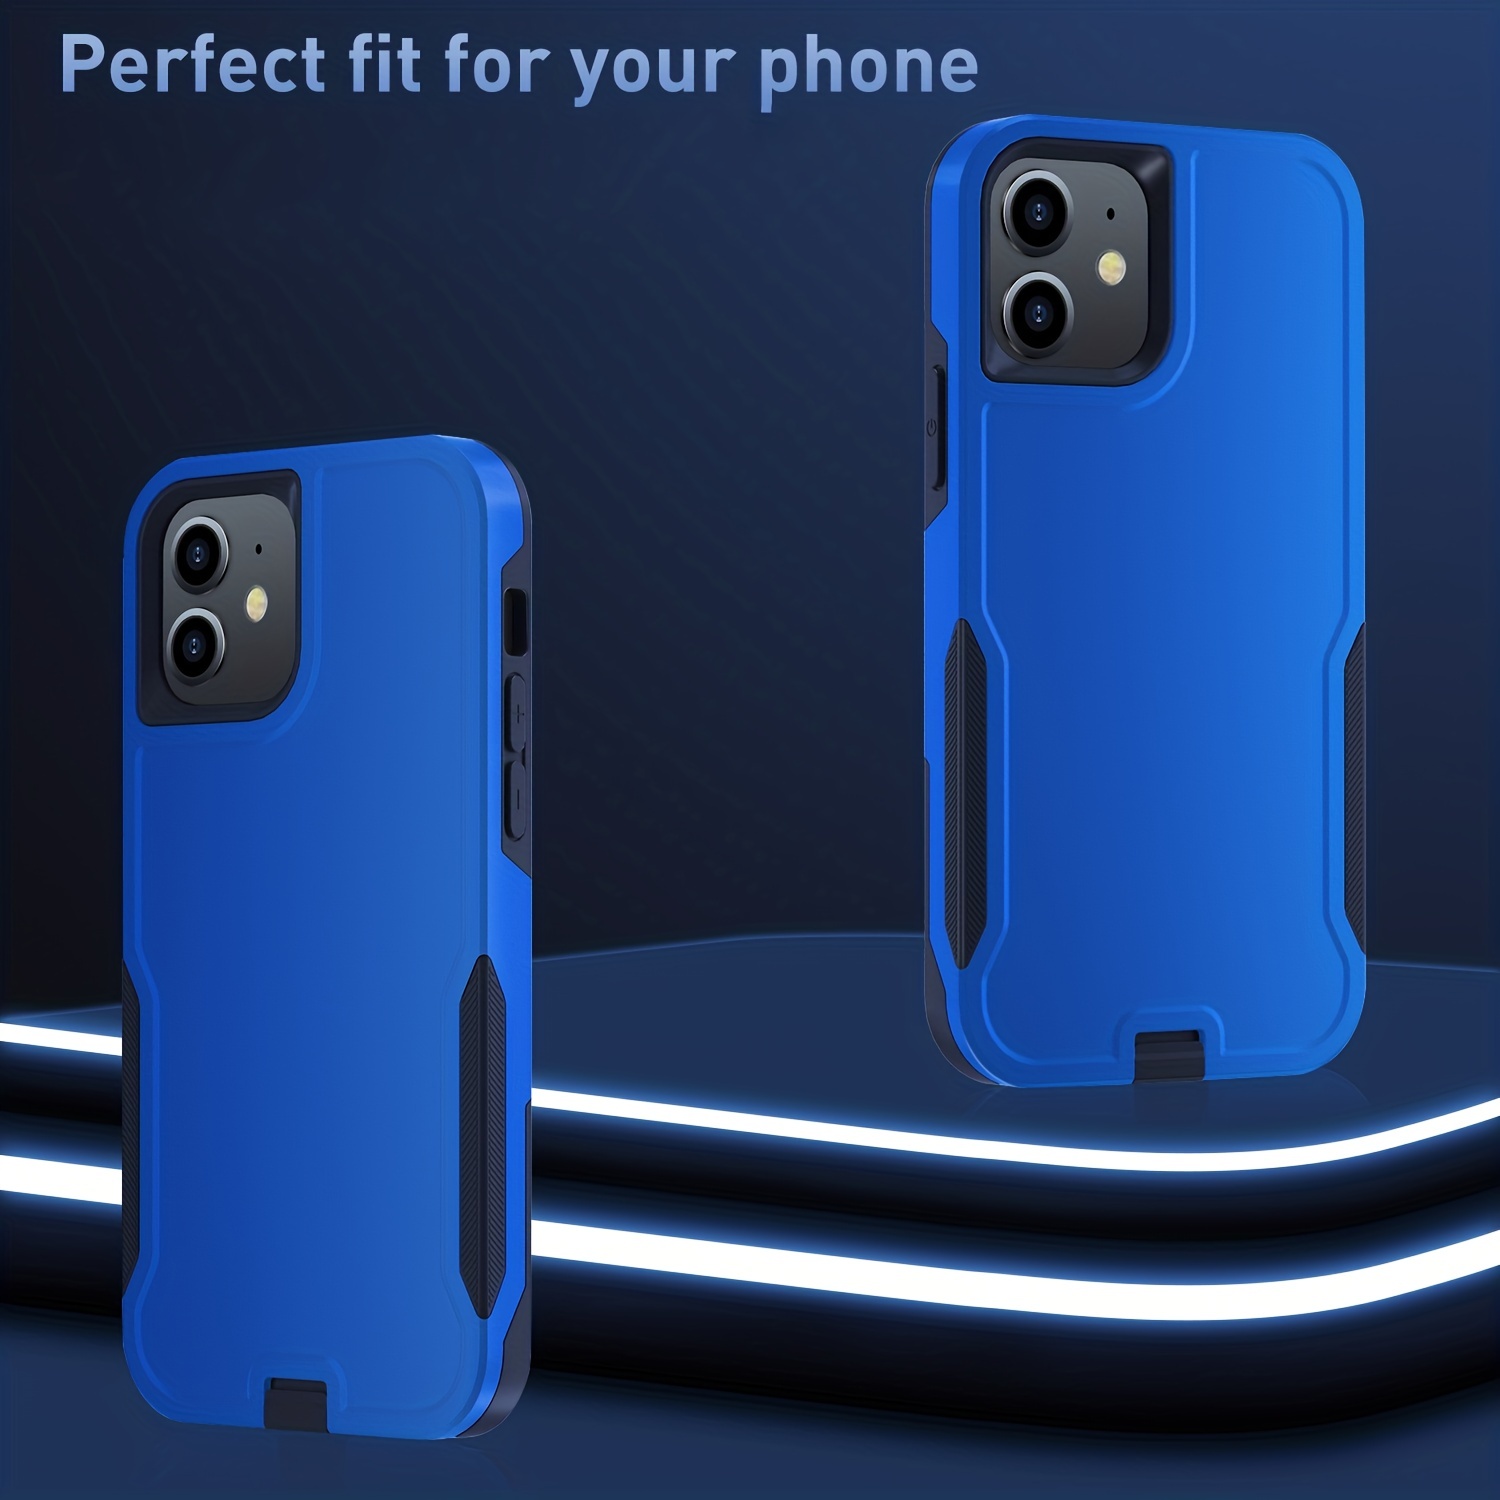 Funda para iPhone 11 (serie de cuerpo completo de 360°), resistente con  protector de pantalla para iPhone 11 (6.1 pulgadas), transparente